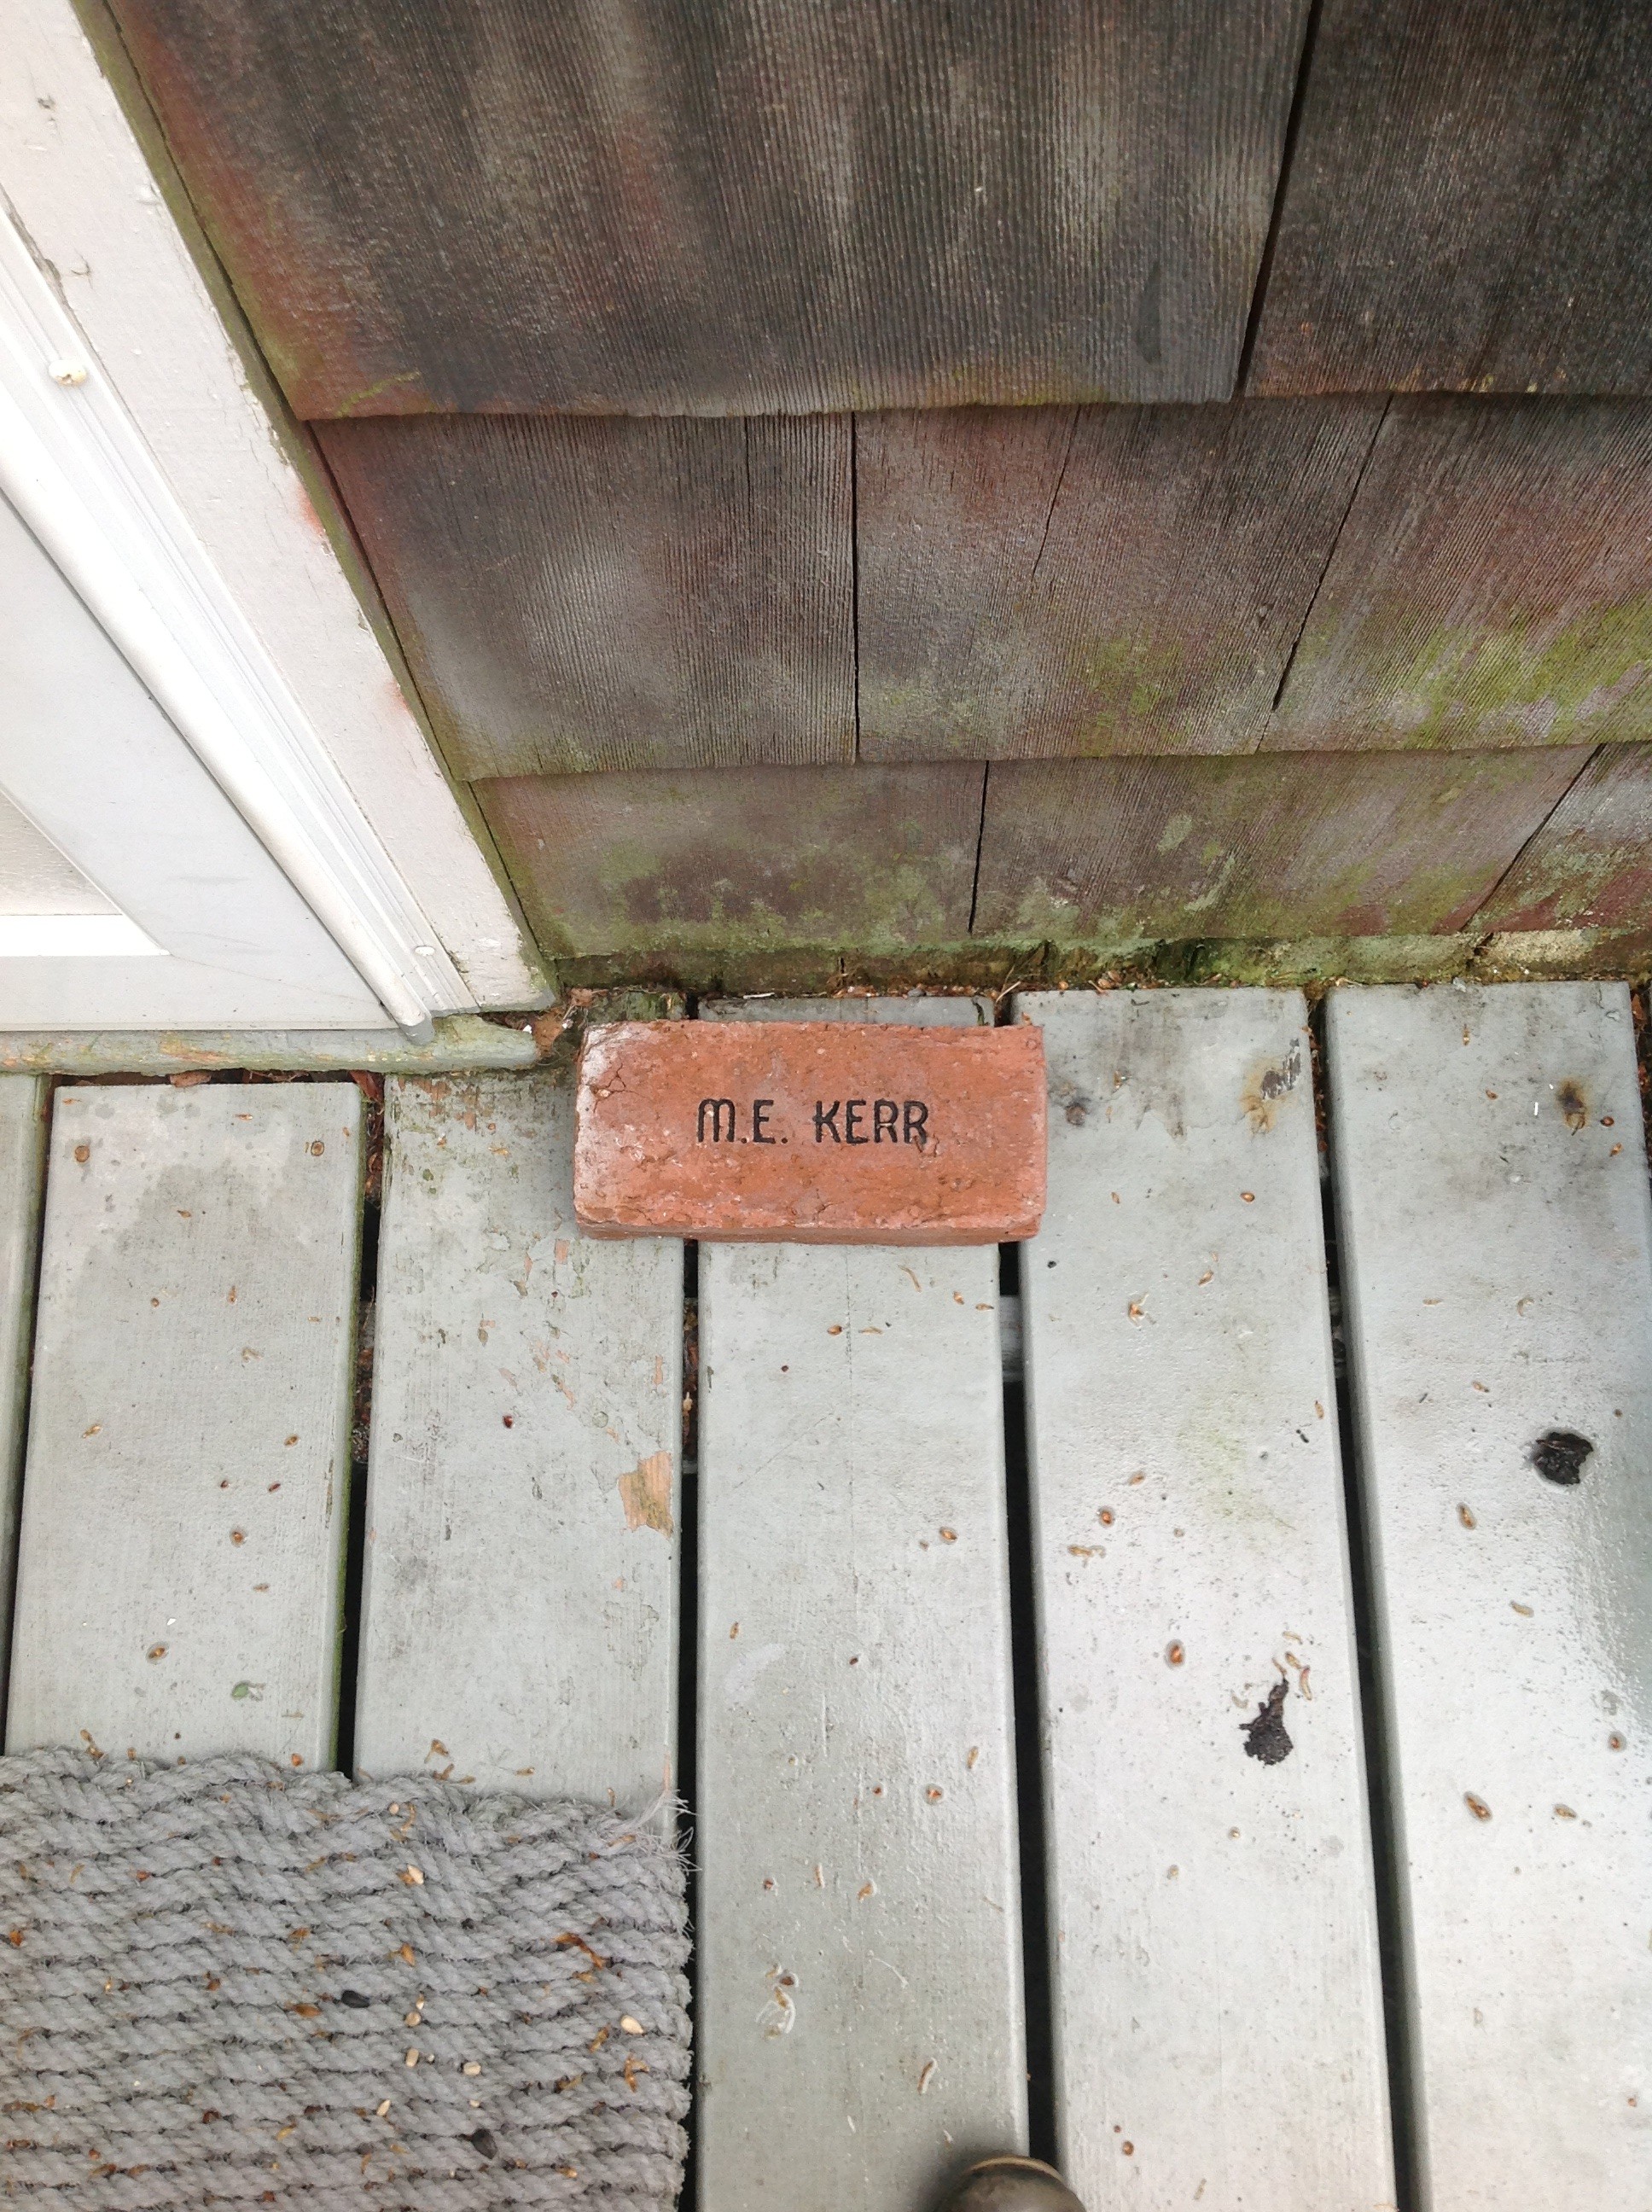 M. E. Kerr's doorstop